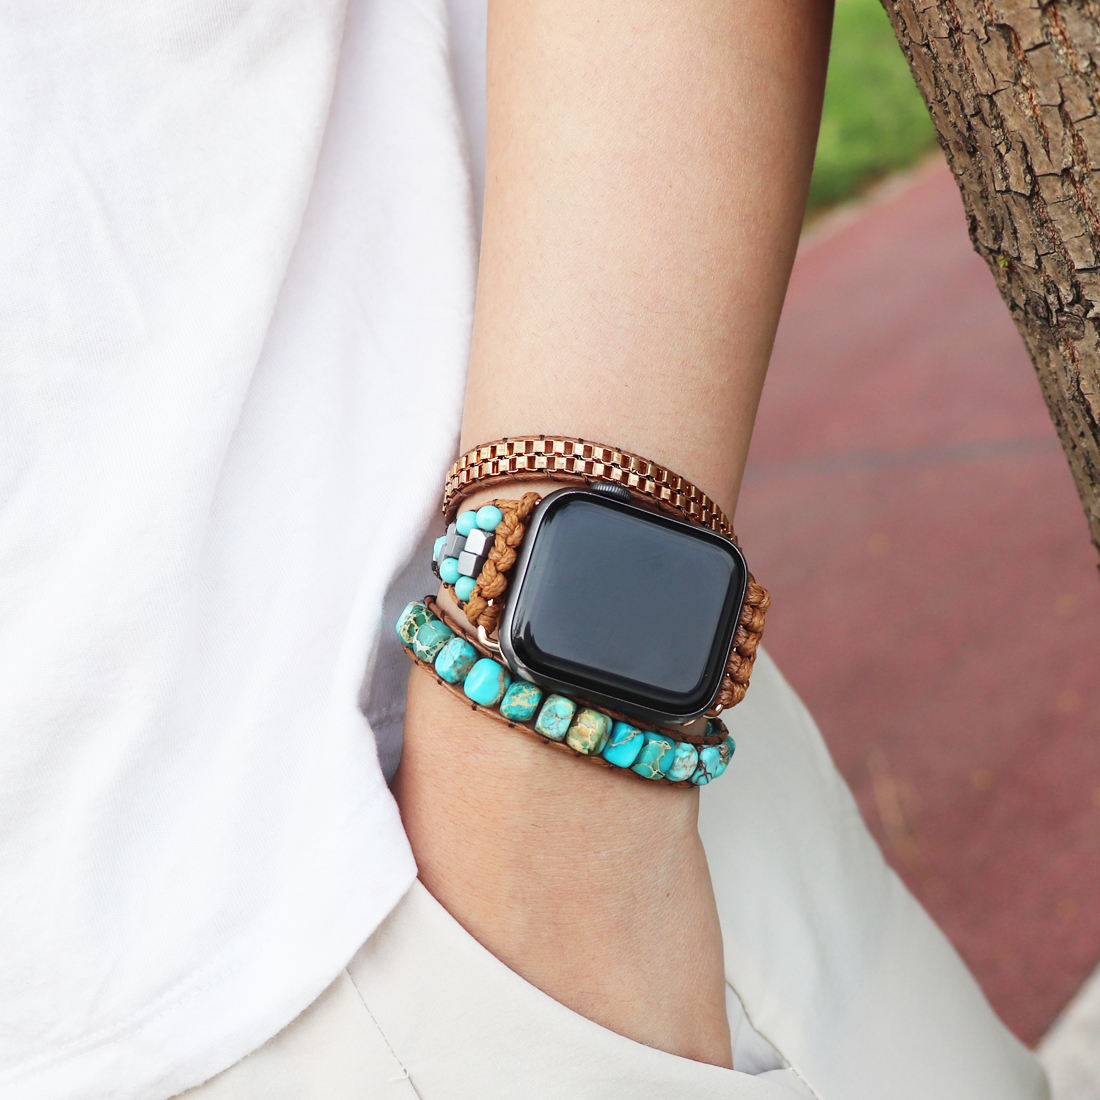 Boho Turquoise Howlite Natural Stone Apple Watch Strap – amaraboho